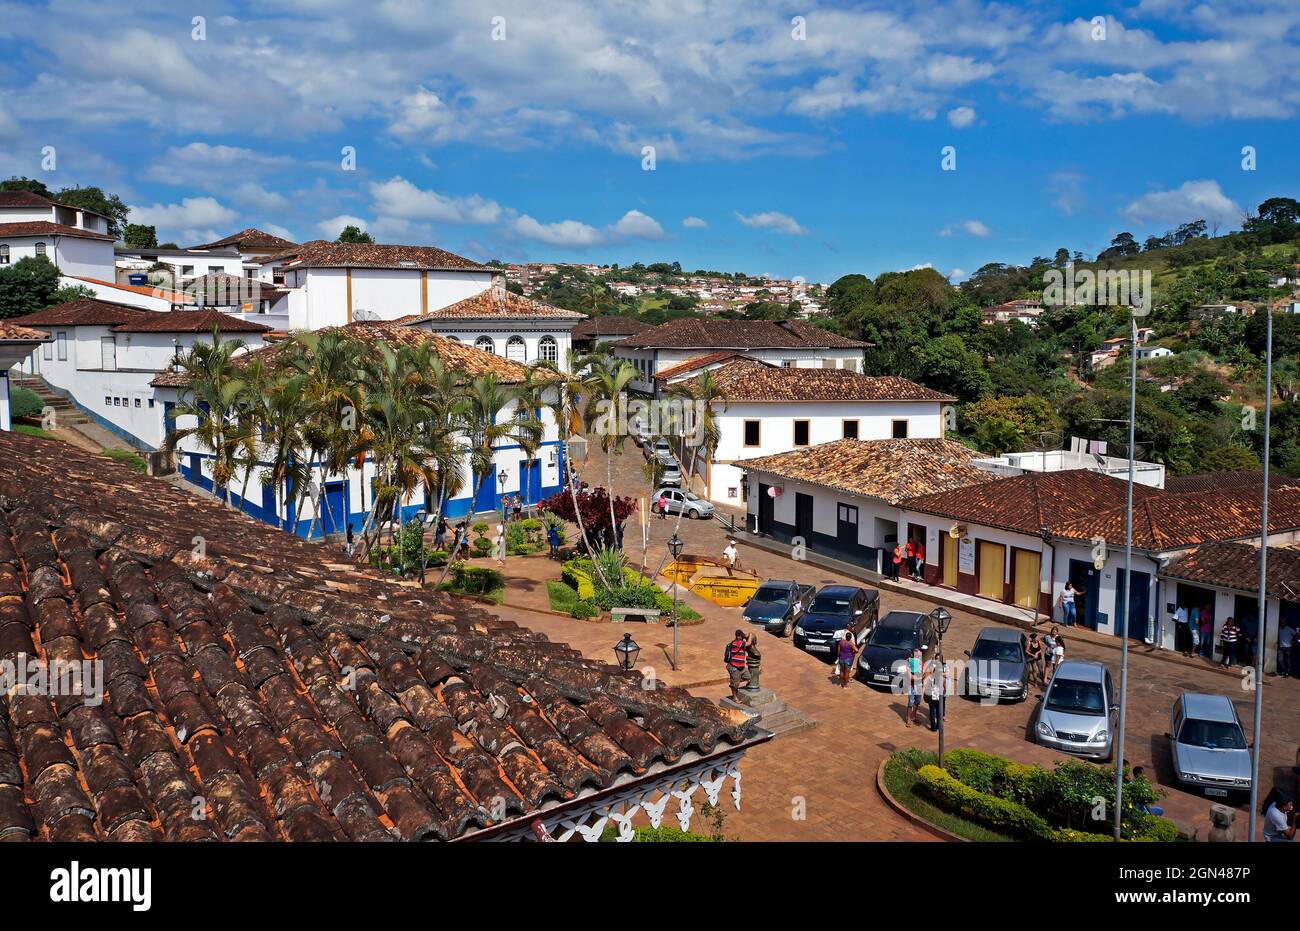 SERRO, MINAS GERAIS, BRASILE - 21 GENNAIO 2019: Vista dalla piazza centrale nella città storica di Serro con turisti e locali Foto Stock